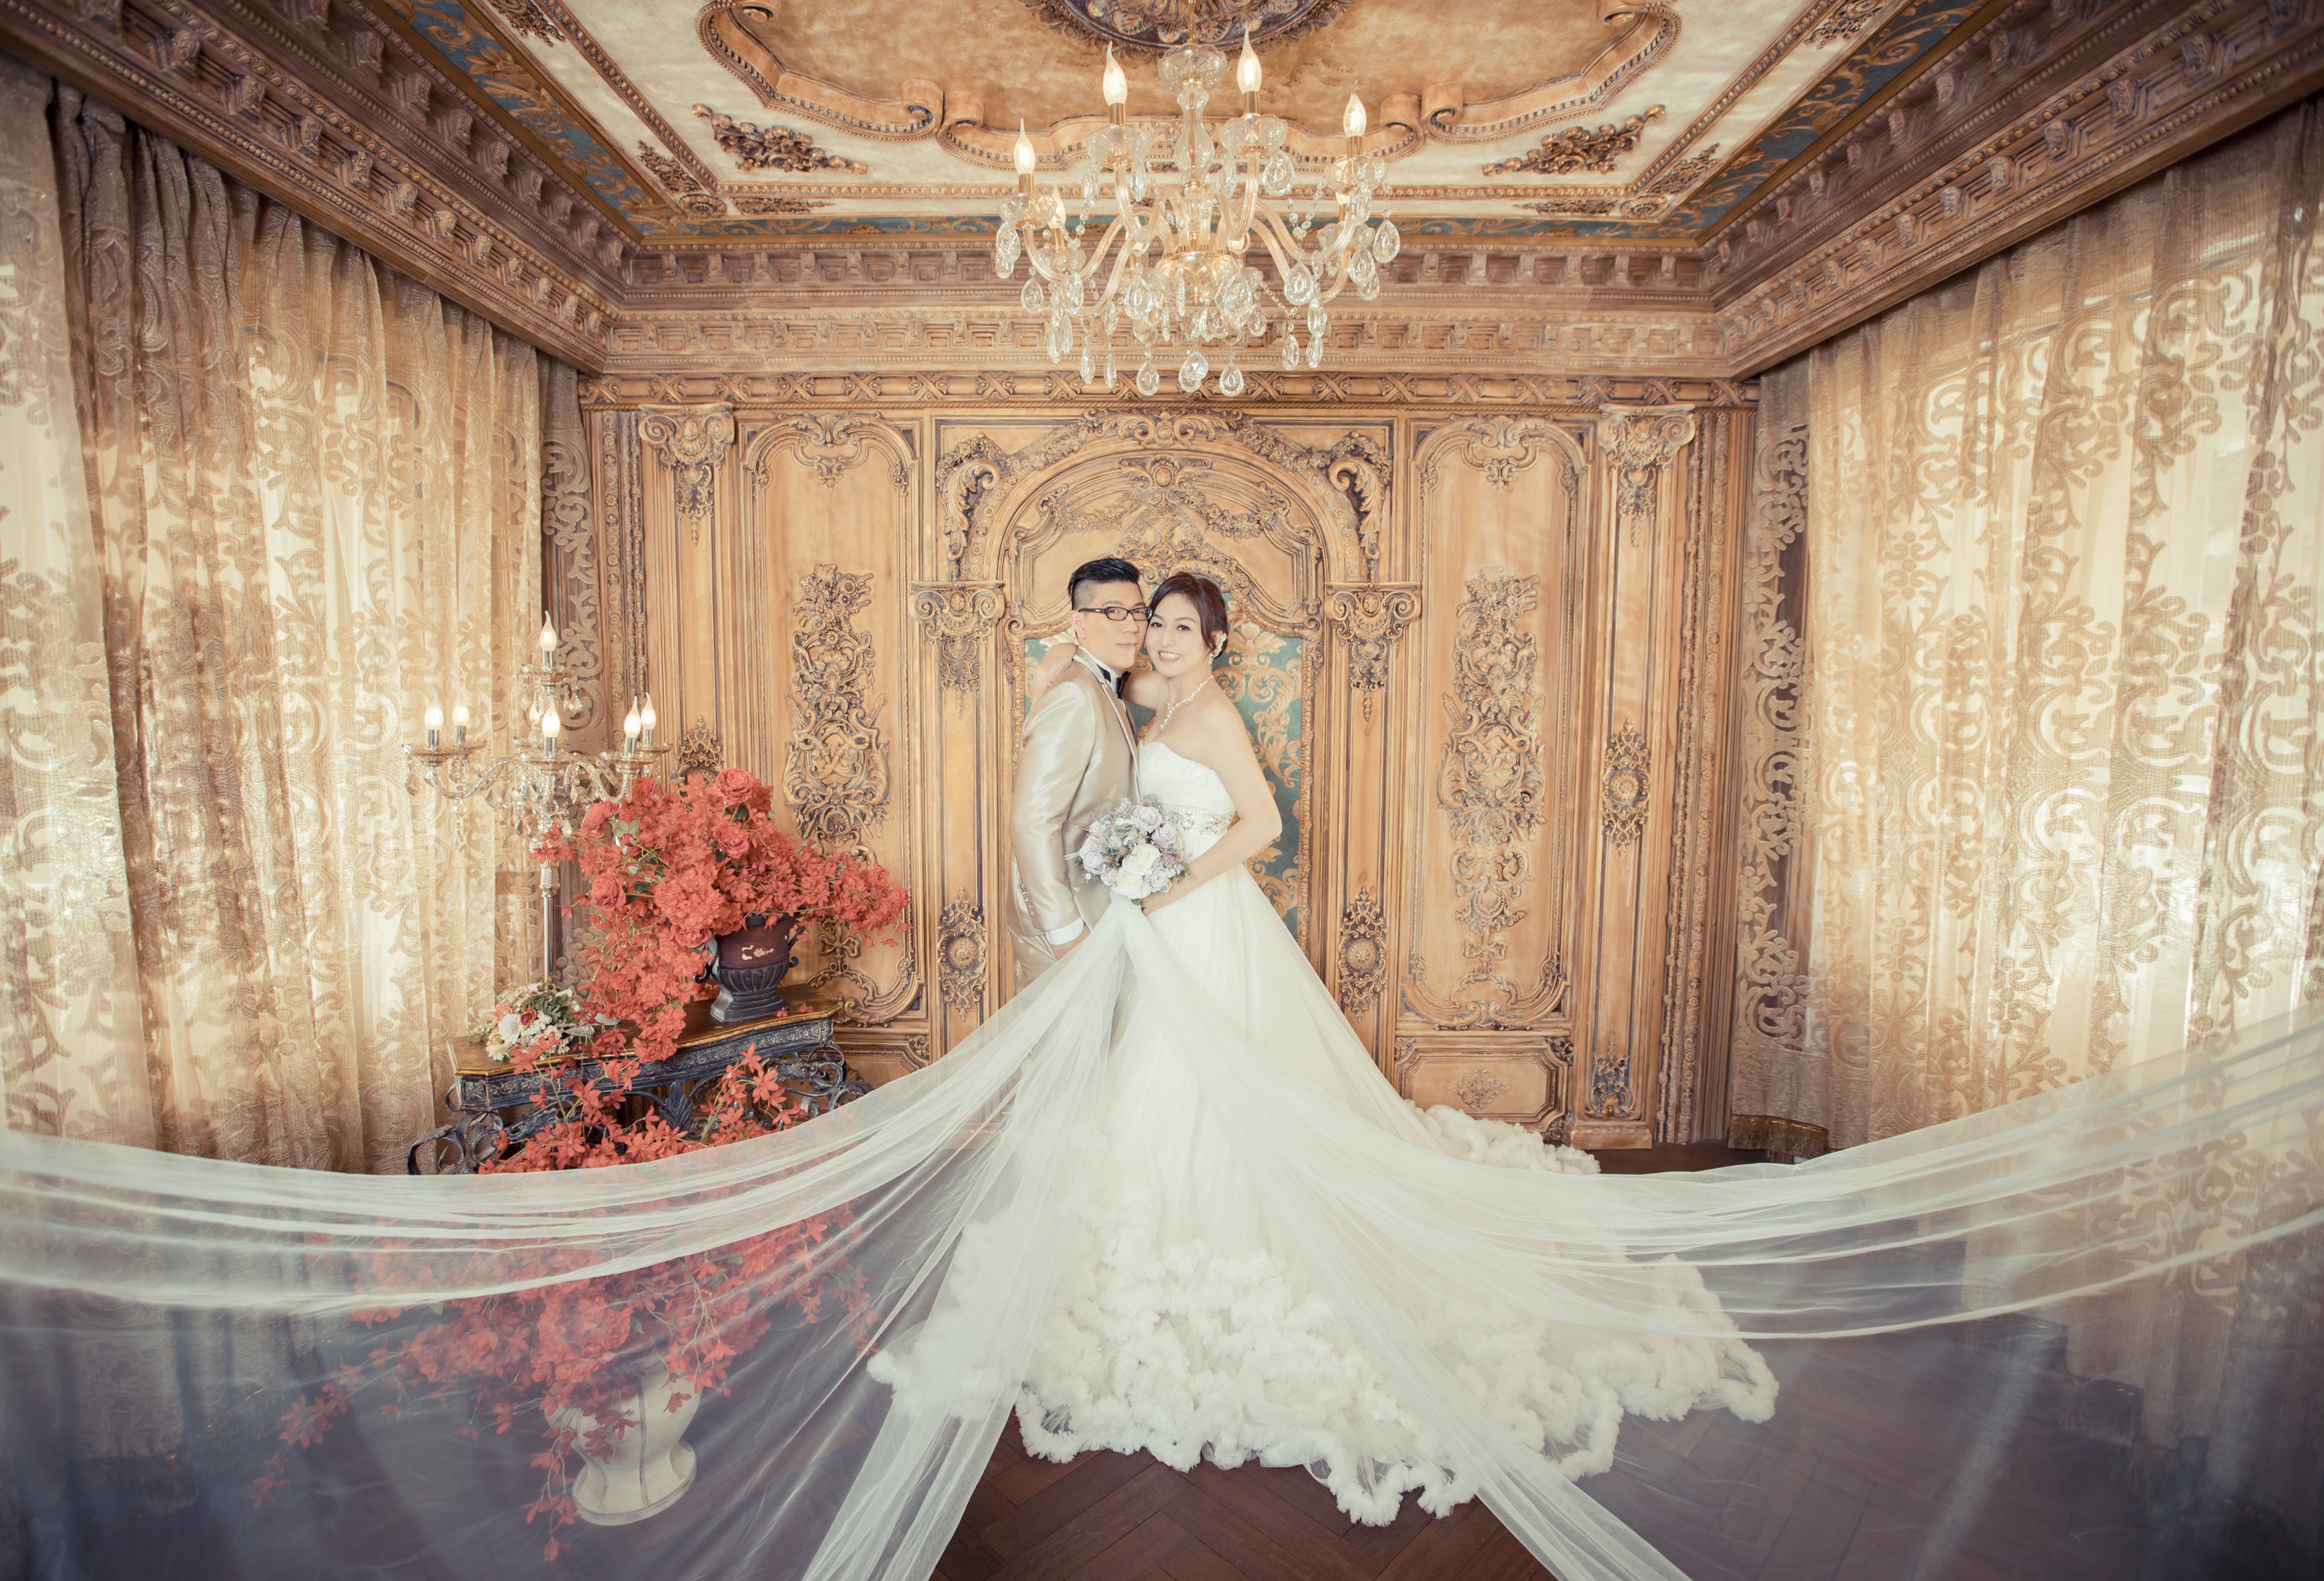 婚紗攝影分享-為您好事WH韓風婚紗 -結婚經驗分享